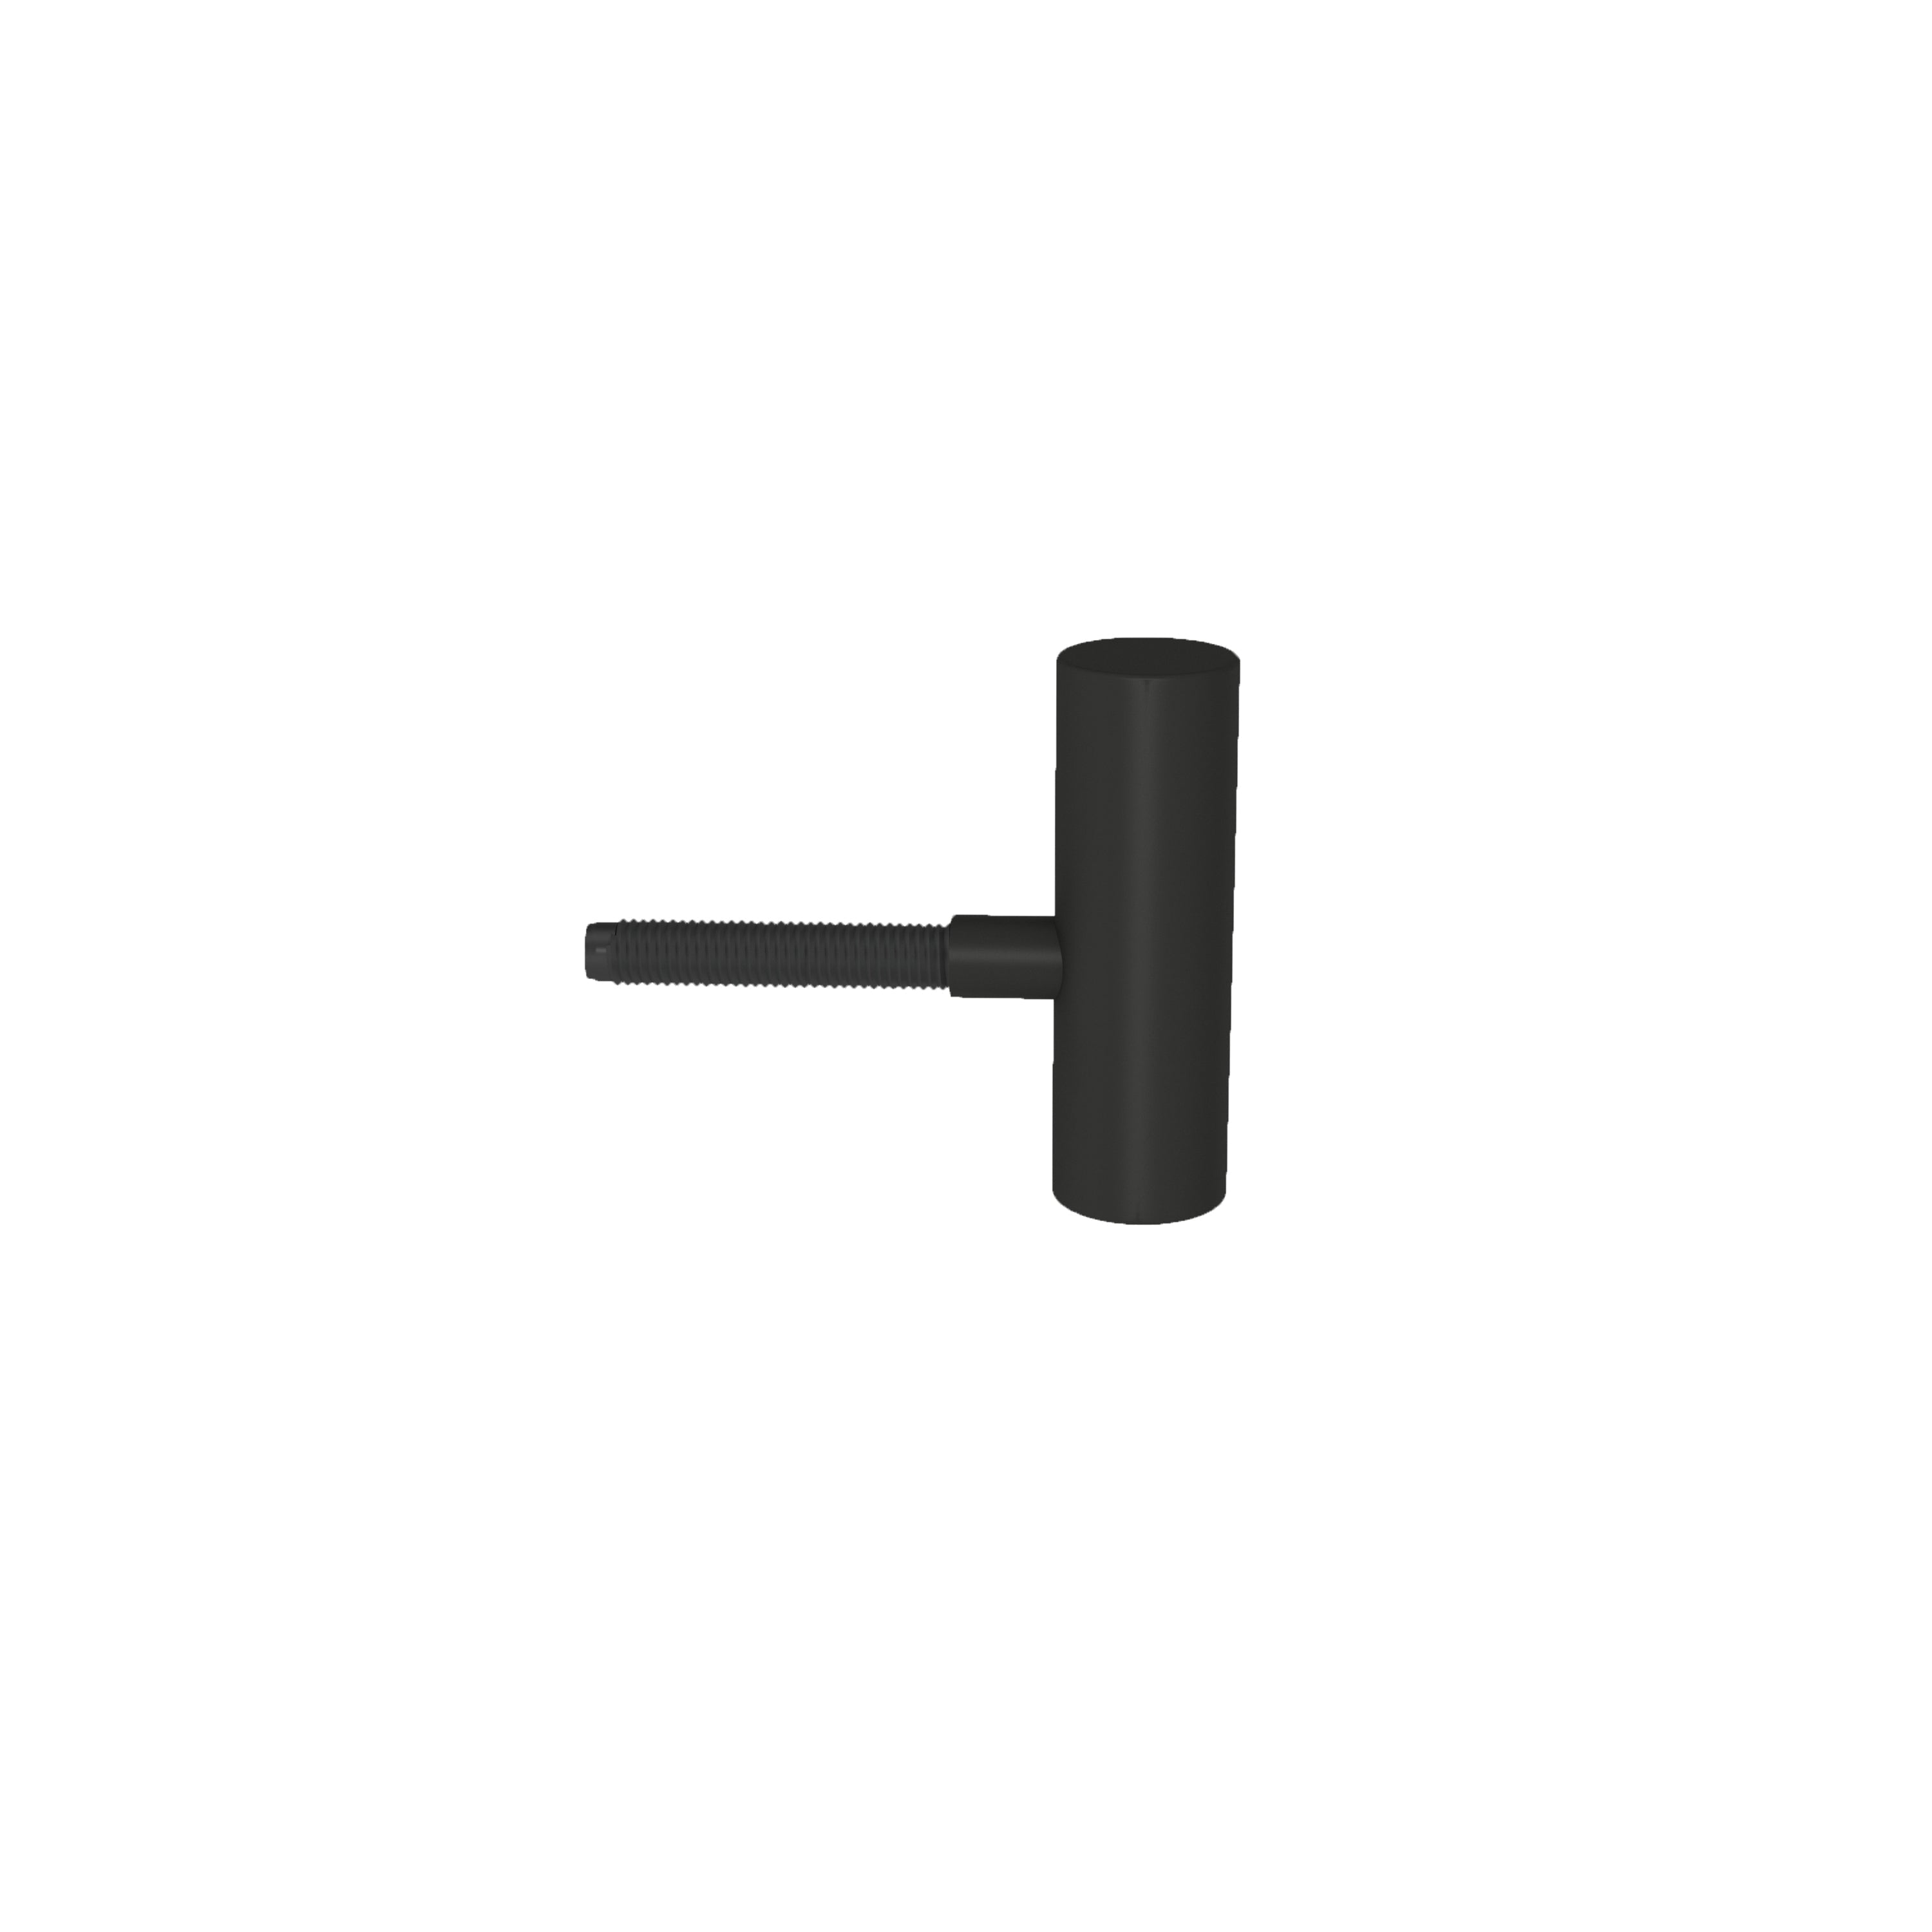 Türbandset 2-teilig für gefälzte Türen an Stahlzargen matt-schwarz